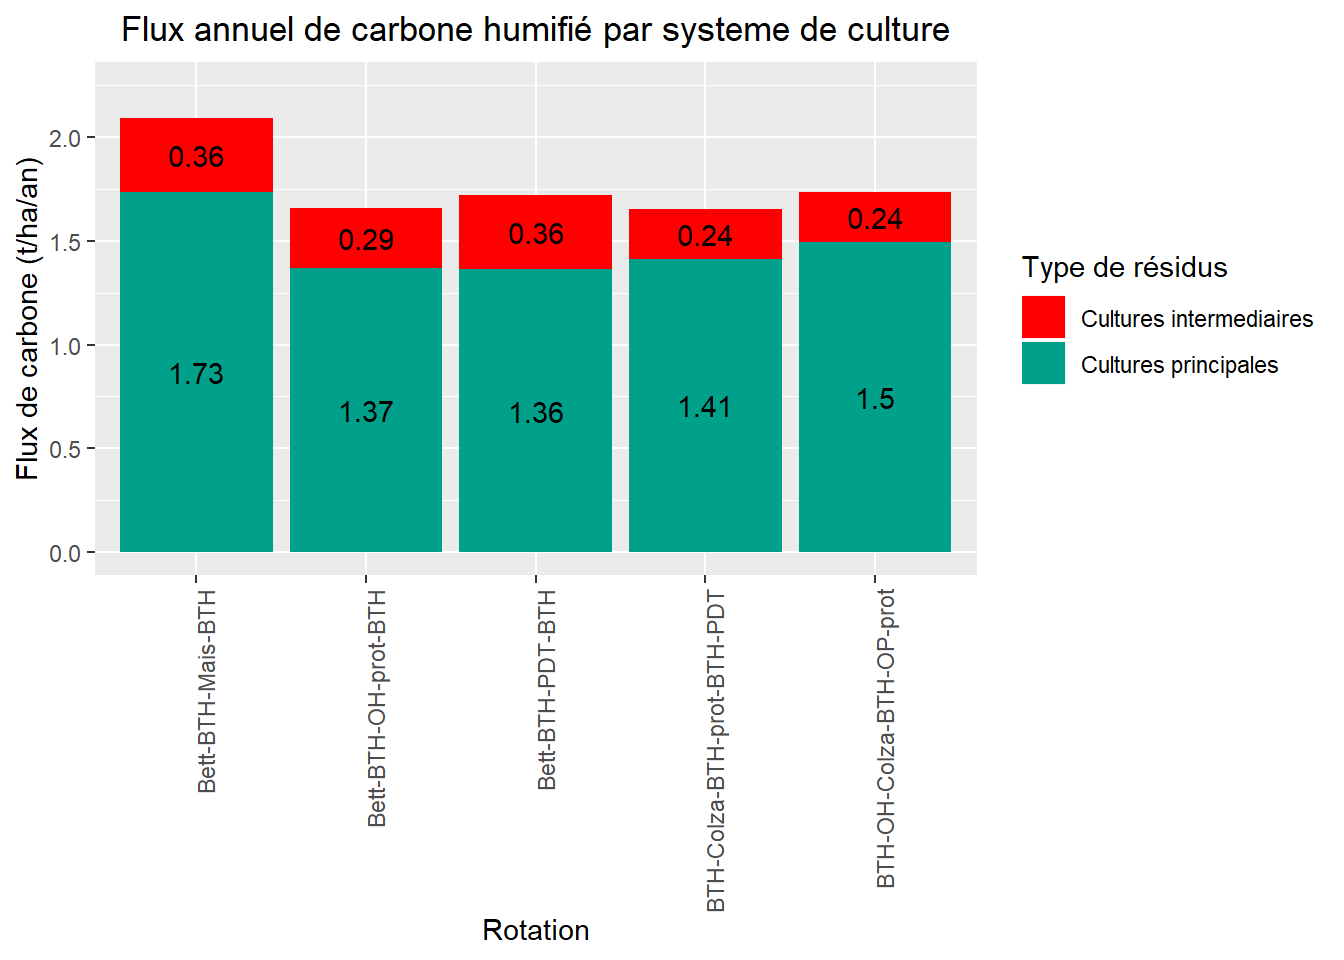 Flux de carbone humifié par rotation (Source des données : [projet ABC Terre 2A](http://www.agro-transfert-rt.org/abcterre-2a/demarche-abcterre/){target="_blank"} )